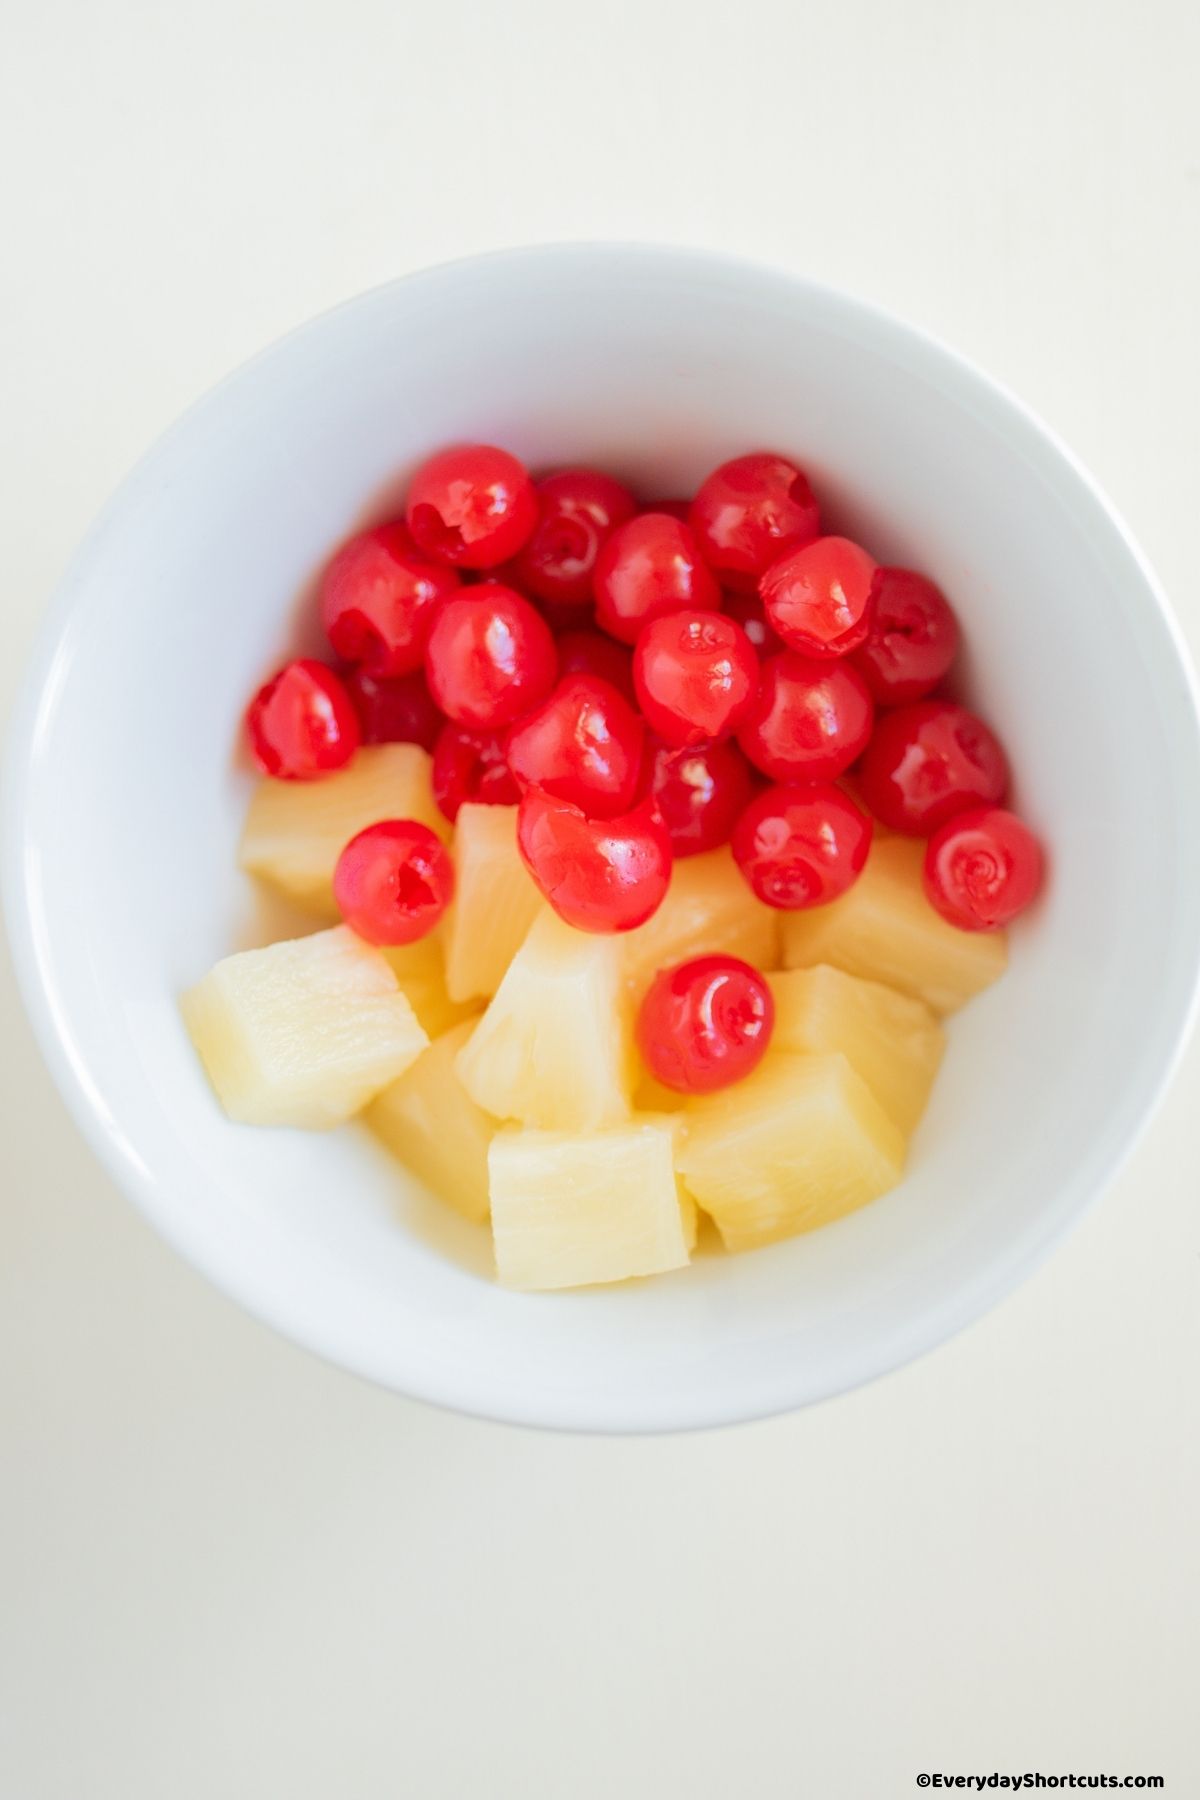 maraschino cherries and pineapple chunks